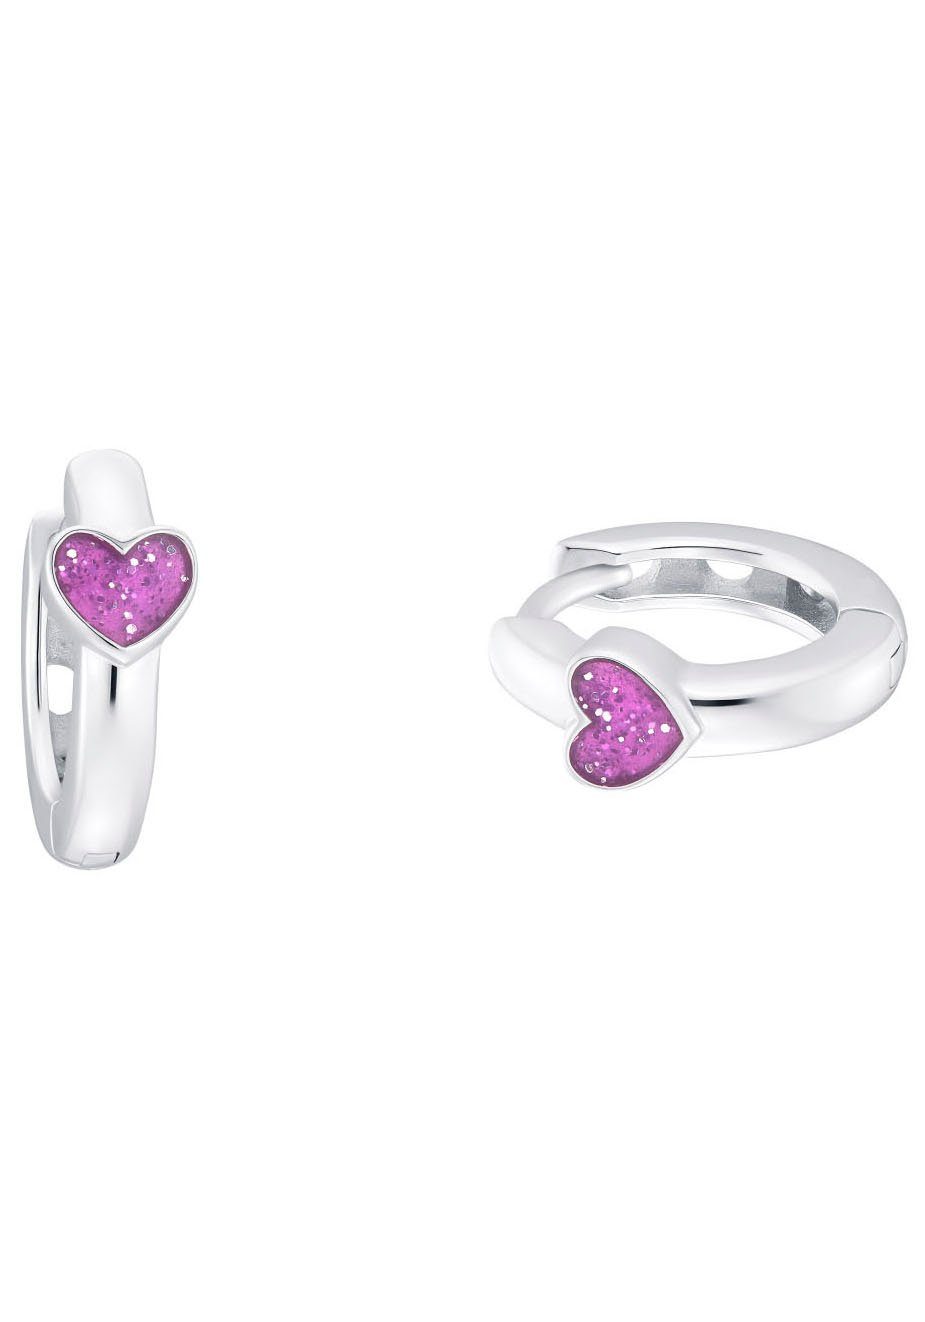 Purple Prinzessin Paar Creolen Heart, 2036442 Lillifee